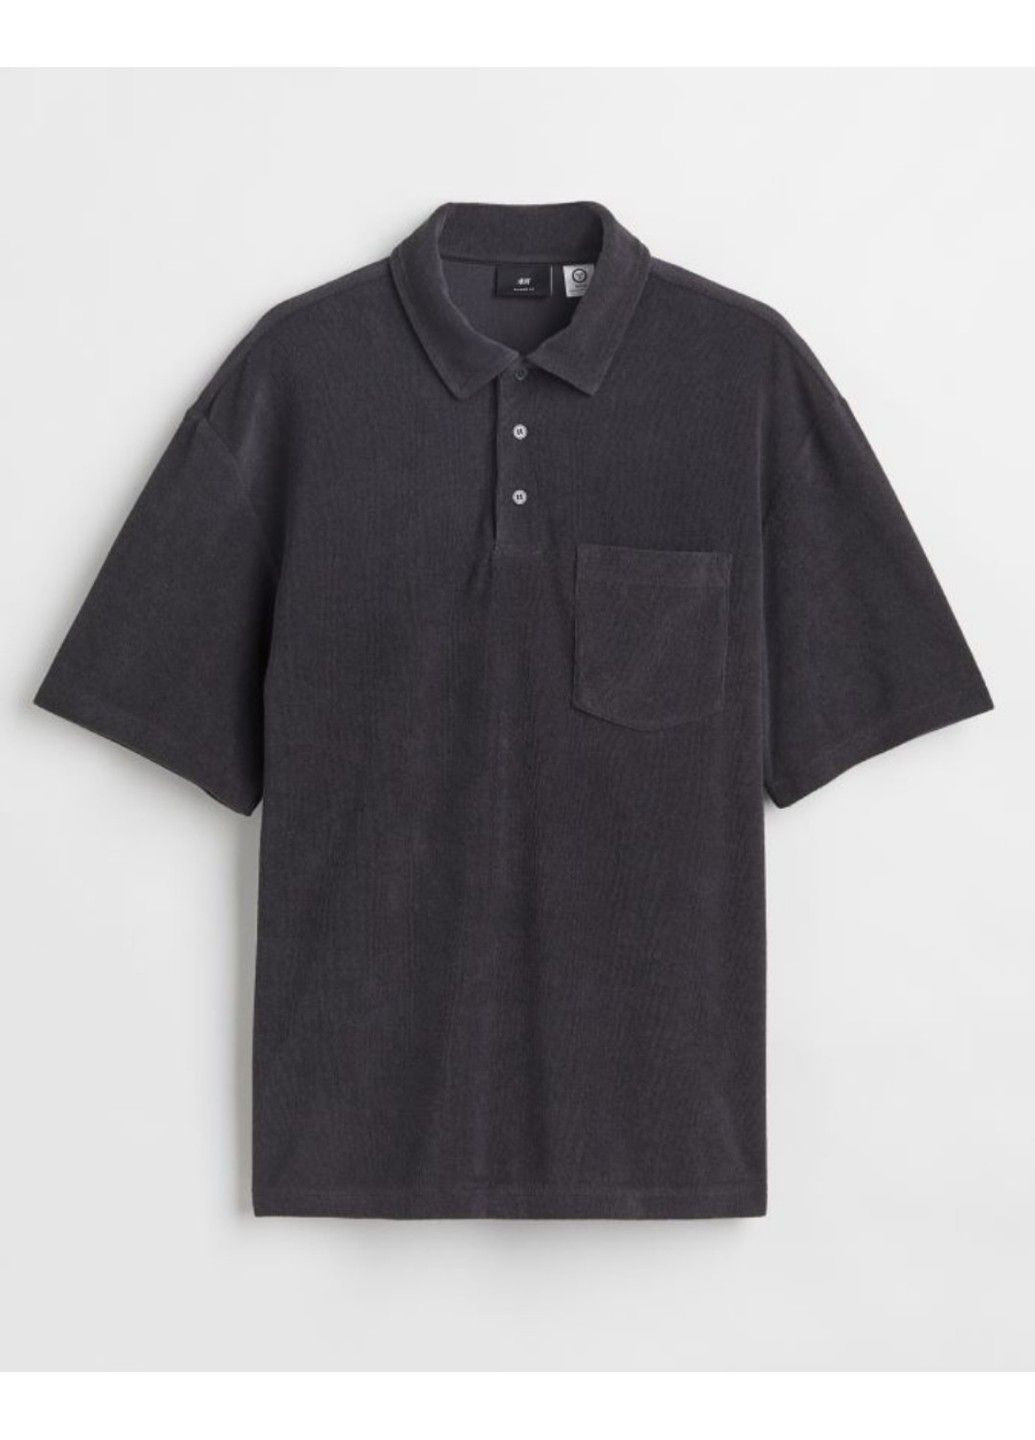 Темно-сіра чоловіча футболка з махрової тканини з коміром relaxed fit н&м (56996) s темно-сіра H&M